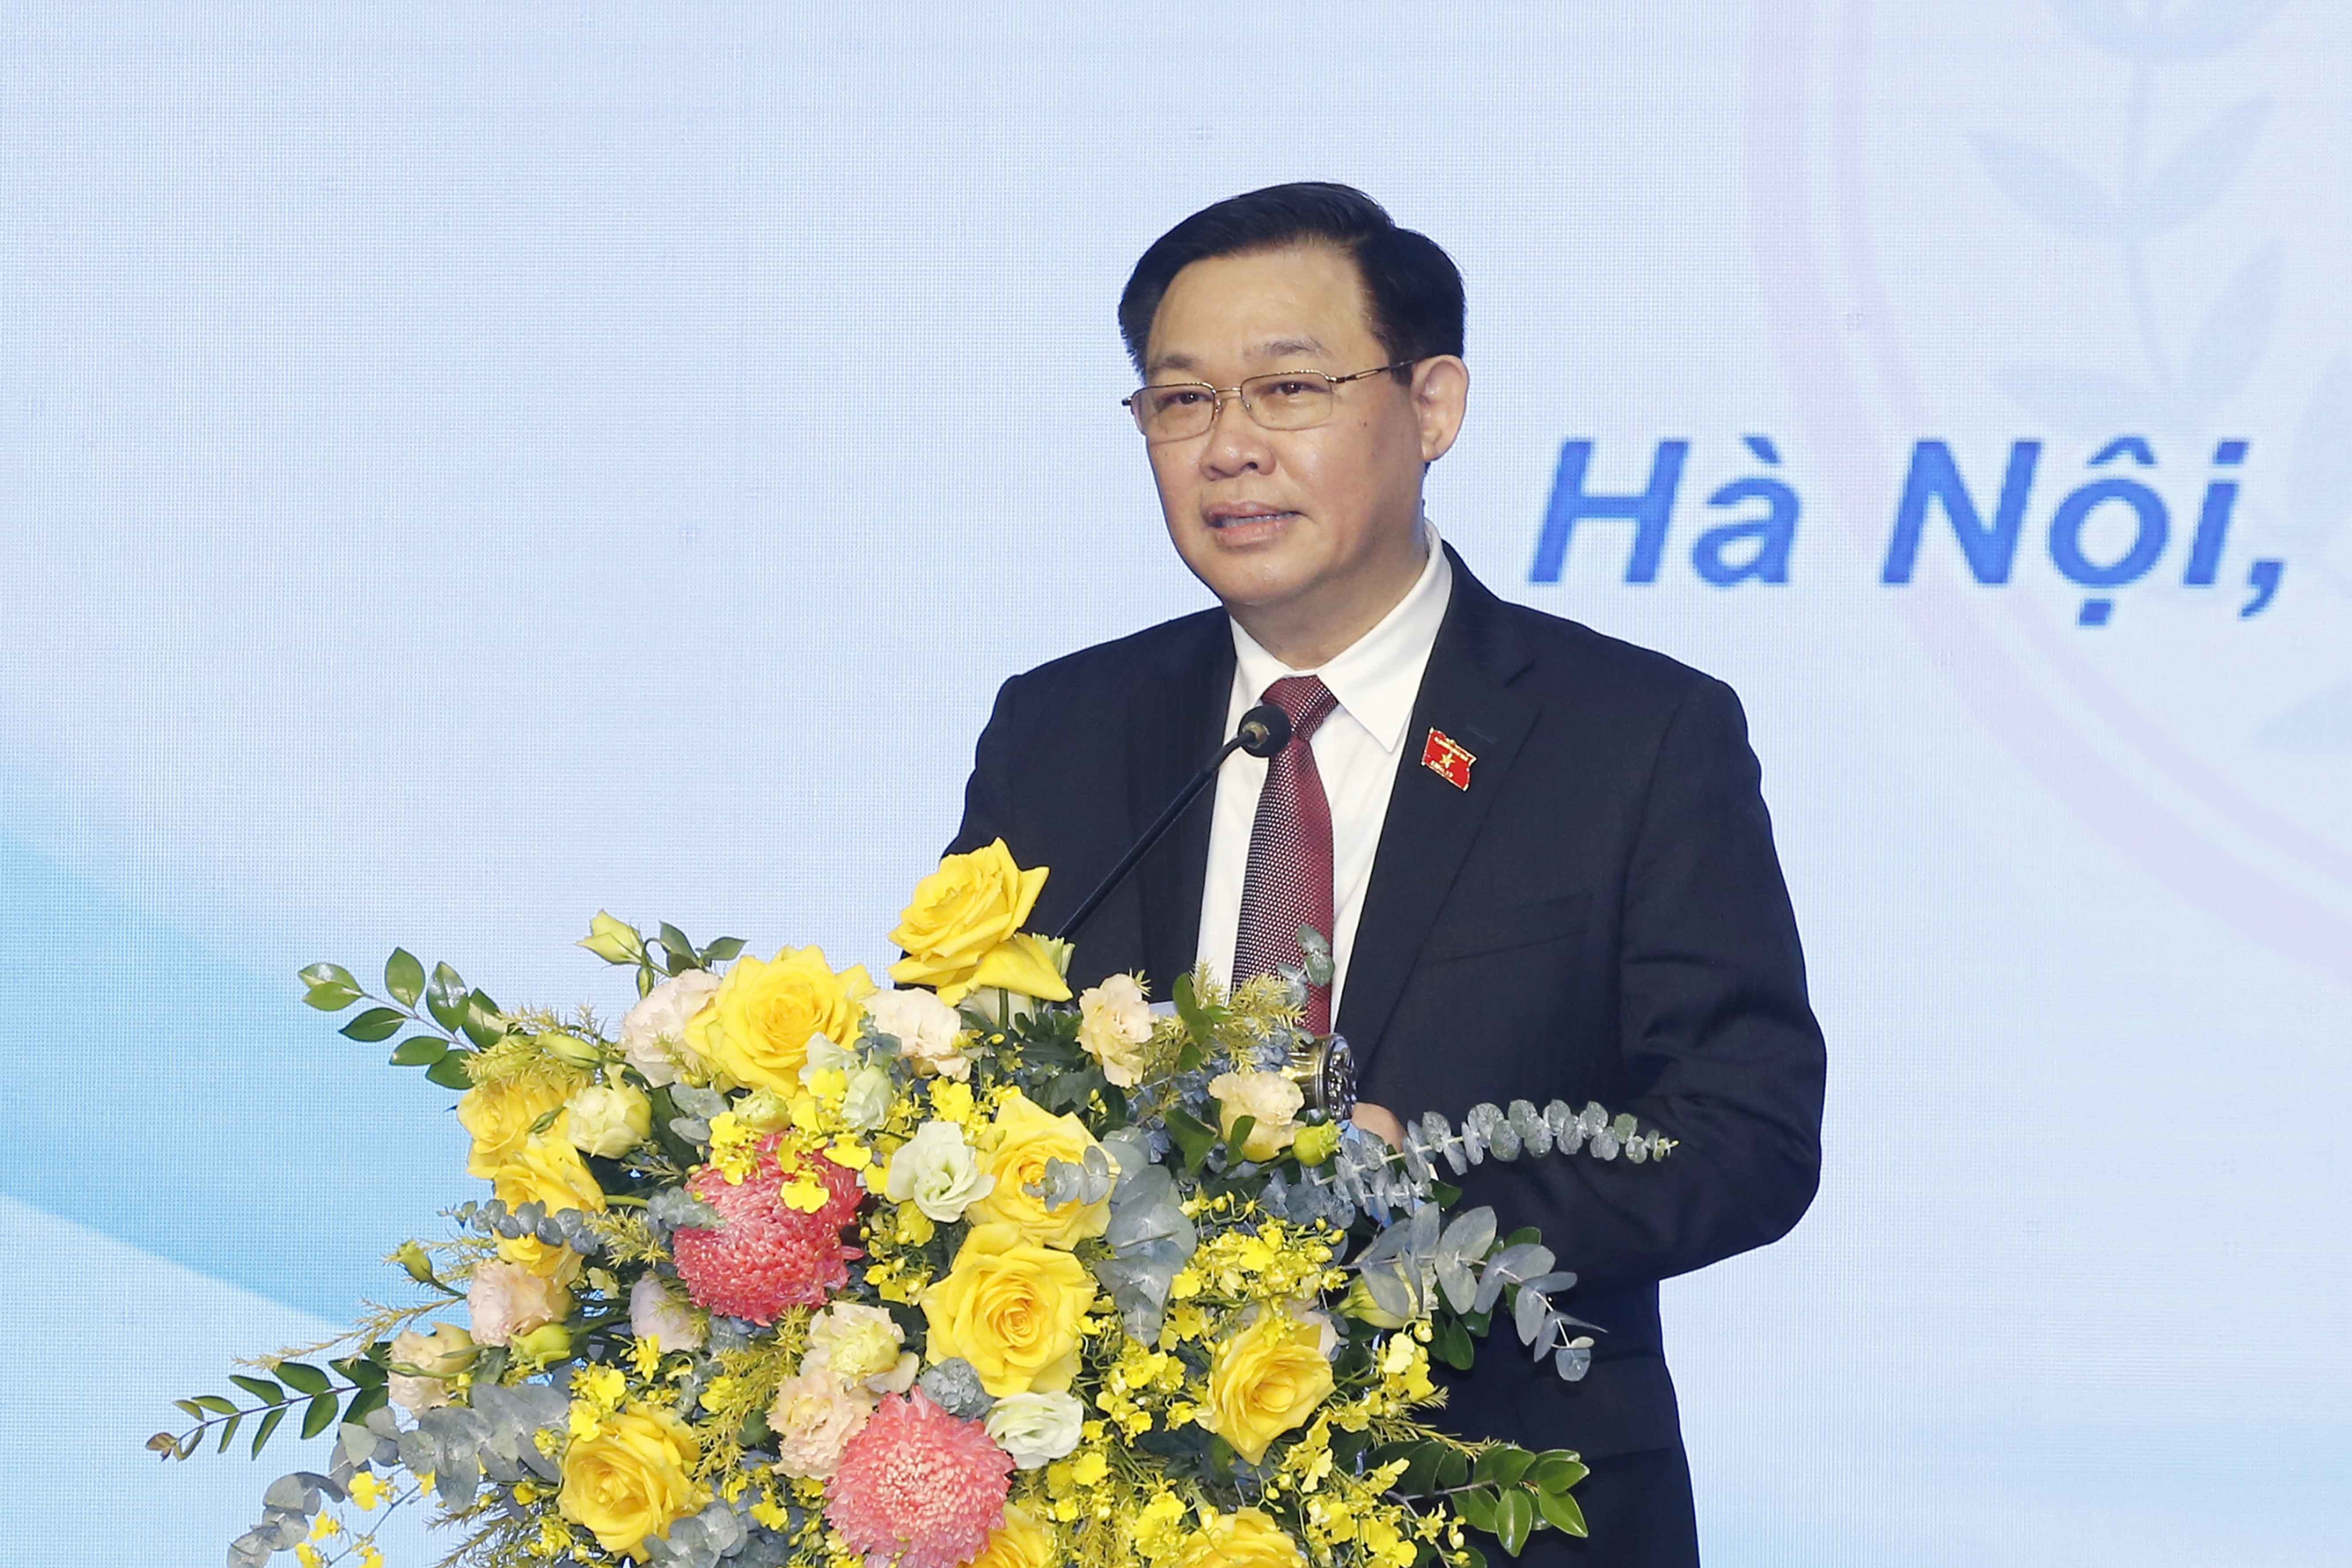 Chủ tịch Quốc hội ủng hộ Đại học Y Hà Nội sở hữu chuỗi bệnh viện thực hành